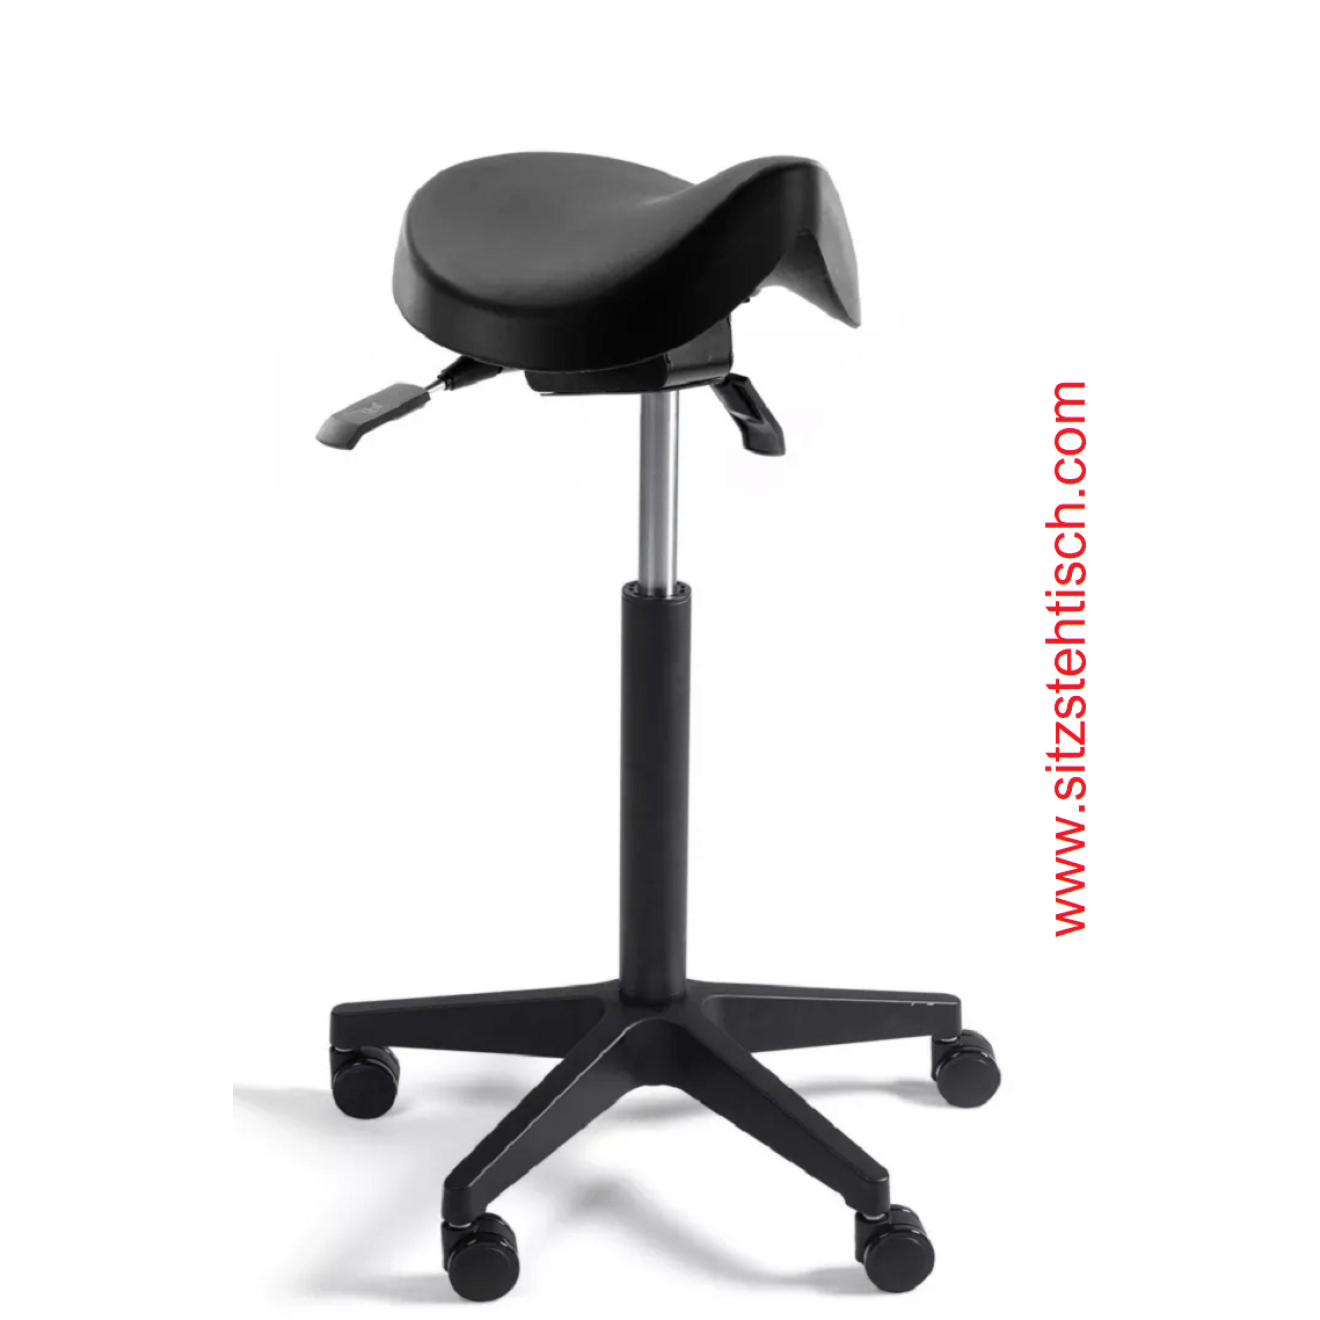 Sattelhocker mit Sitz aus PU Schaum schwarz - Sitzhöhen- und Sitzwinkelverstellung - Belastbarkeit bis 125 kg - 5 Jahre Garantie - 107436